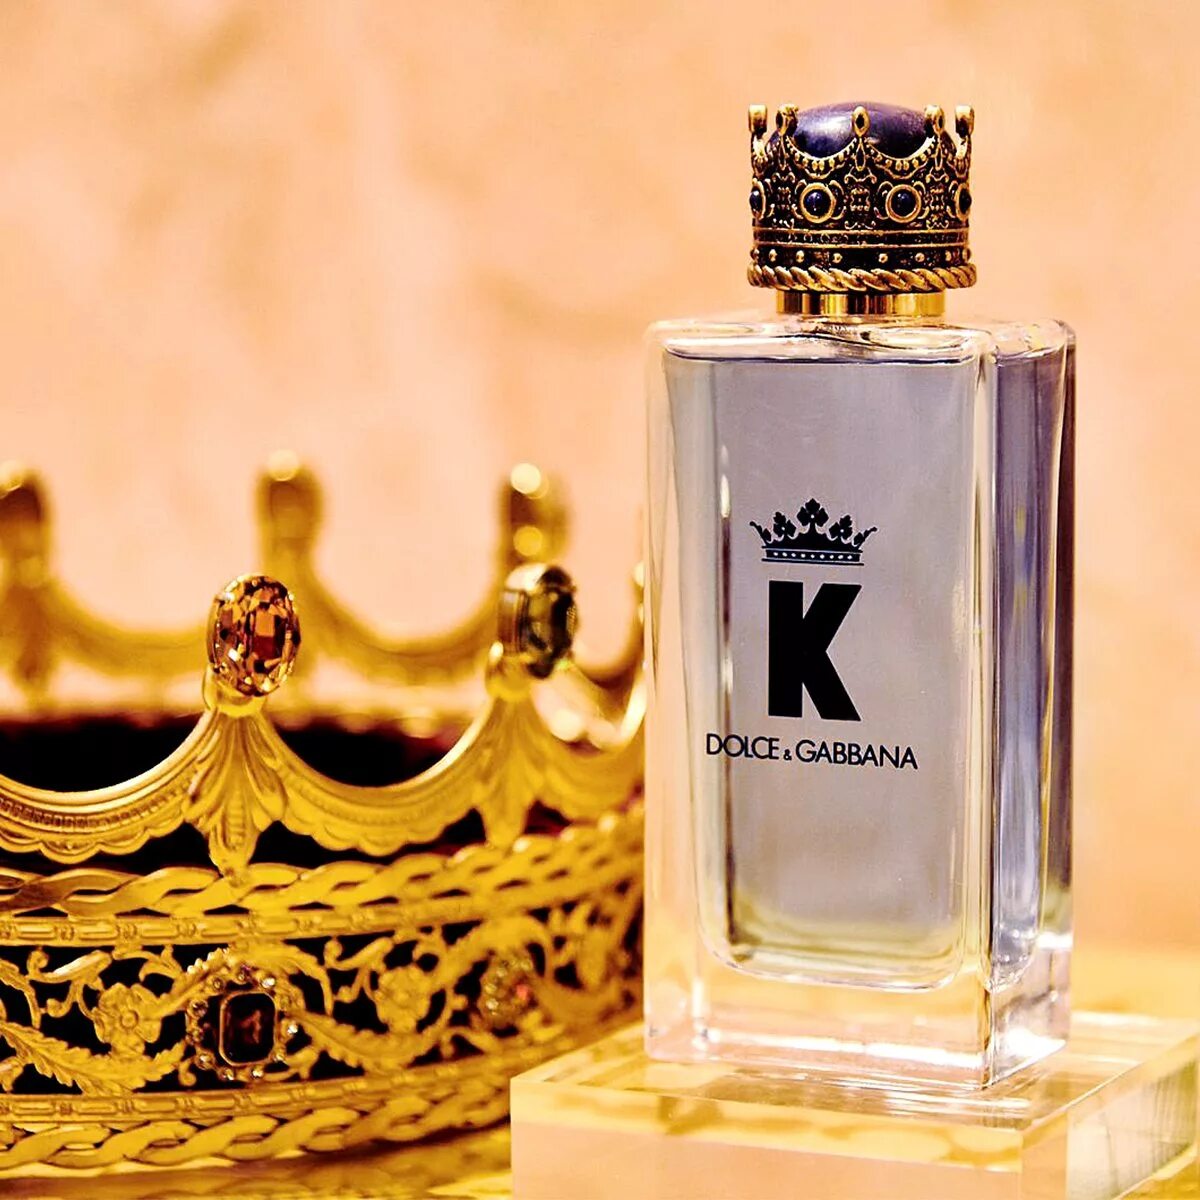 Dolce Gabbana King 100ml. Dolce Gabbana King Parfum. Dolce & Gabbana King Eau de Parfum 100 ml. Dolce Gabbana k King 100ml EDT. D g dolce gabbana